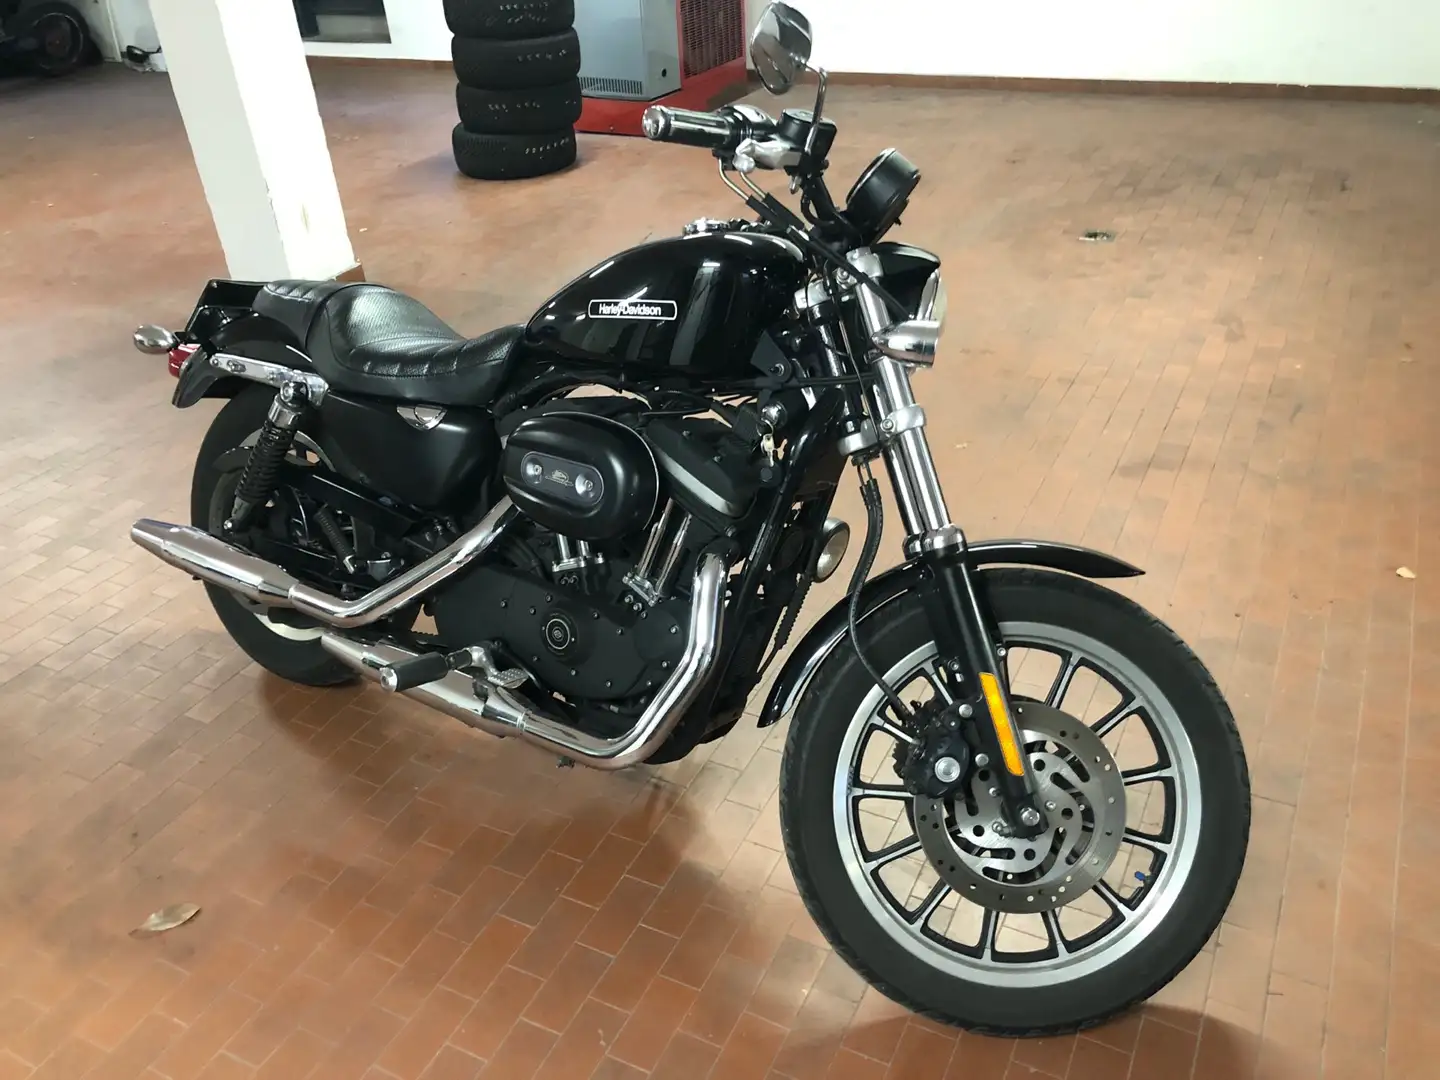 usato Harley-Davidson Sportster 883 Altro a Caslino D'Erba per € 7.400,-